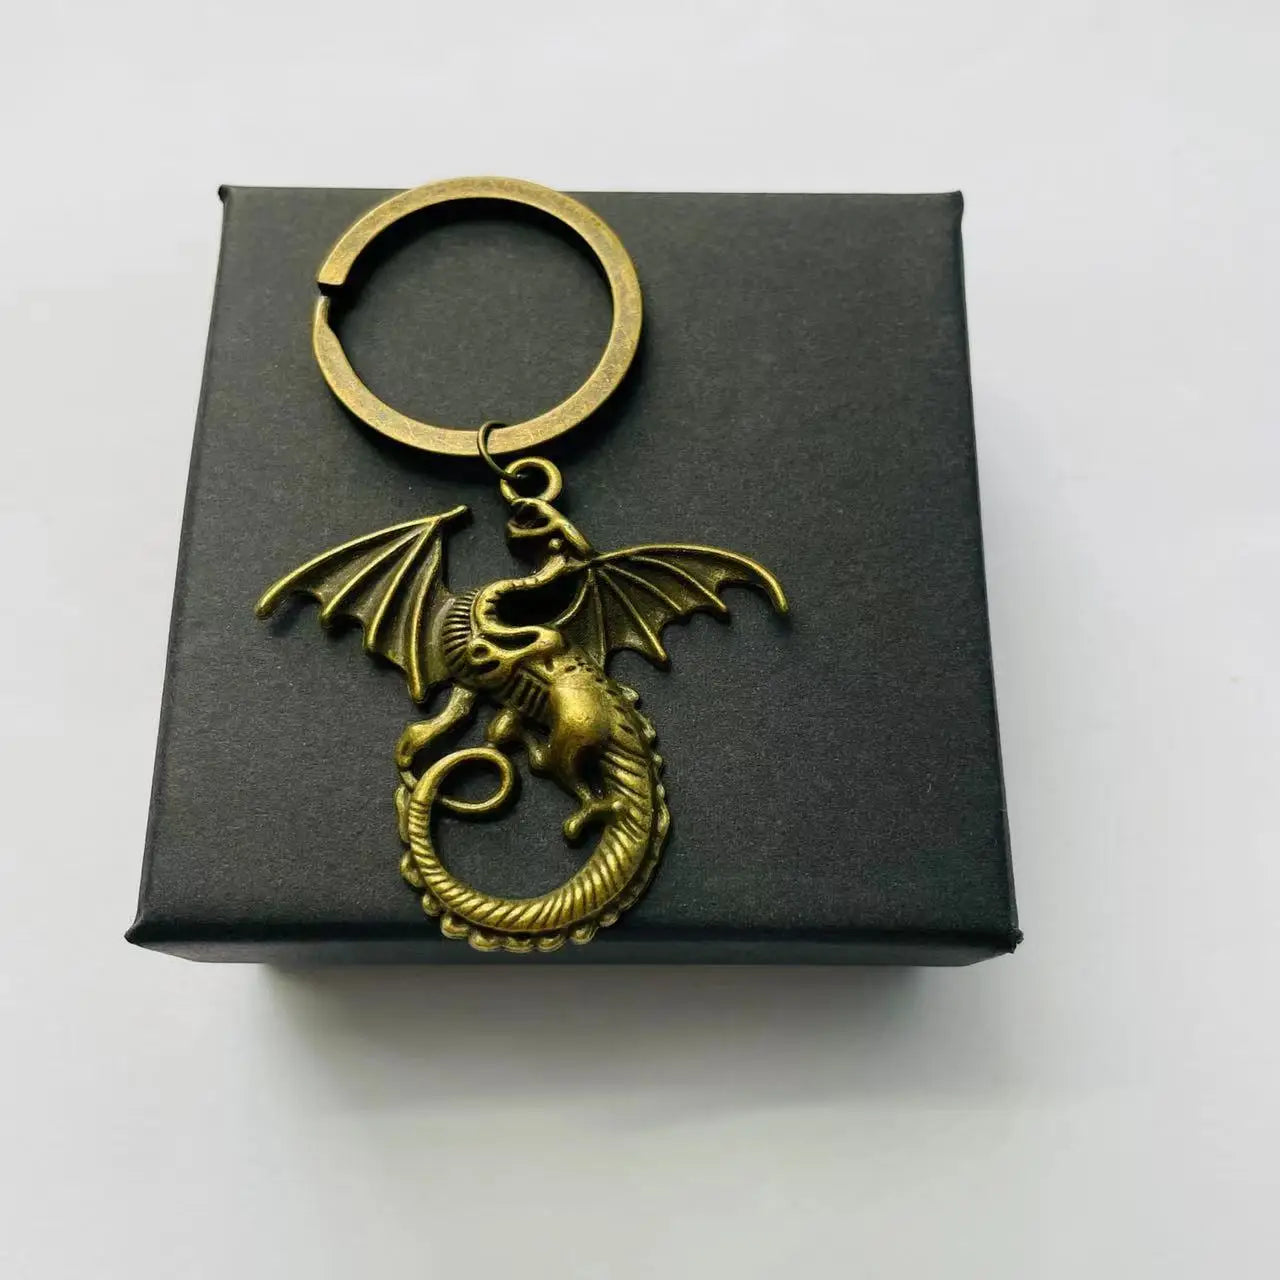 Aile Dragon pendentif porte-clés coffret Vintage médiéval Animal feu Dragon porte-clés Halloween noël nouvel an cadeau d'anniversaire